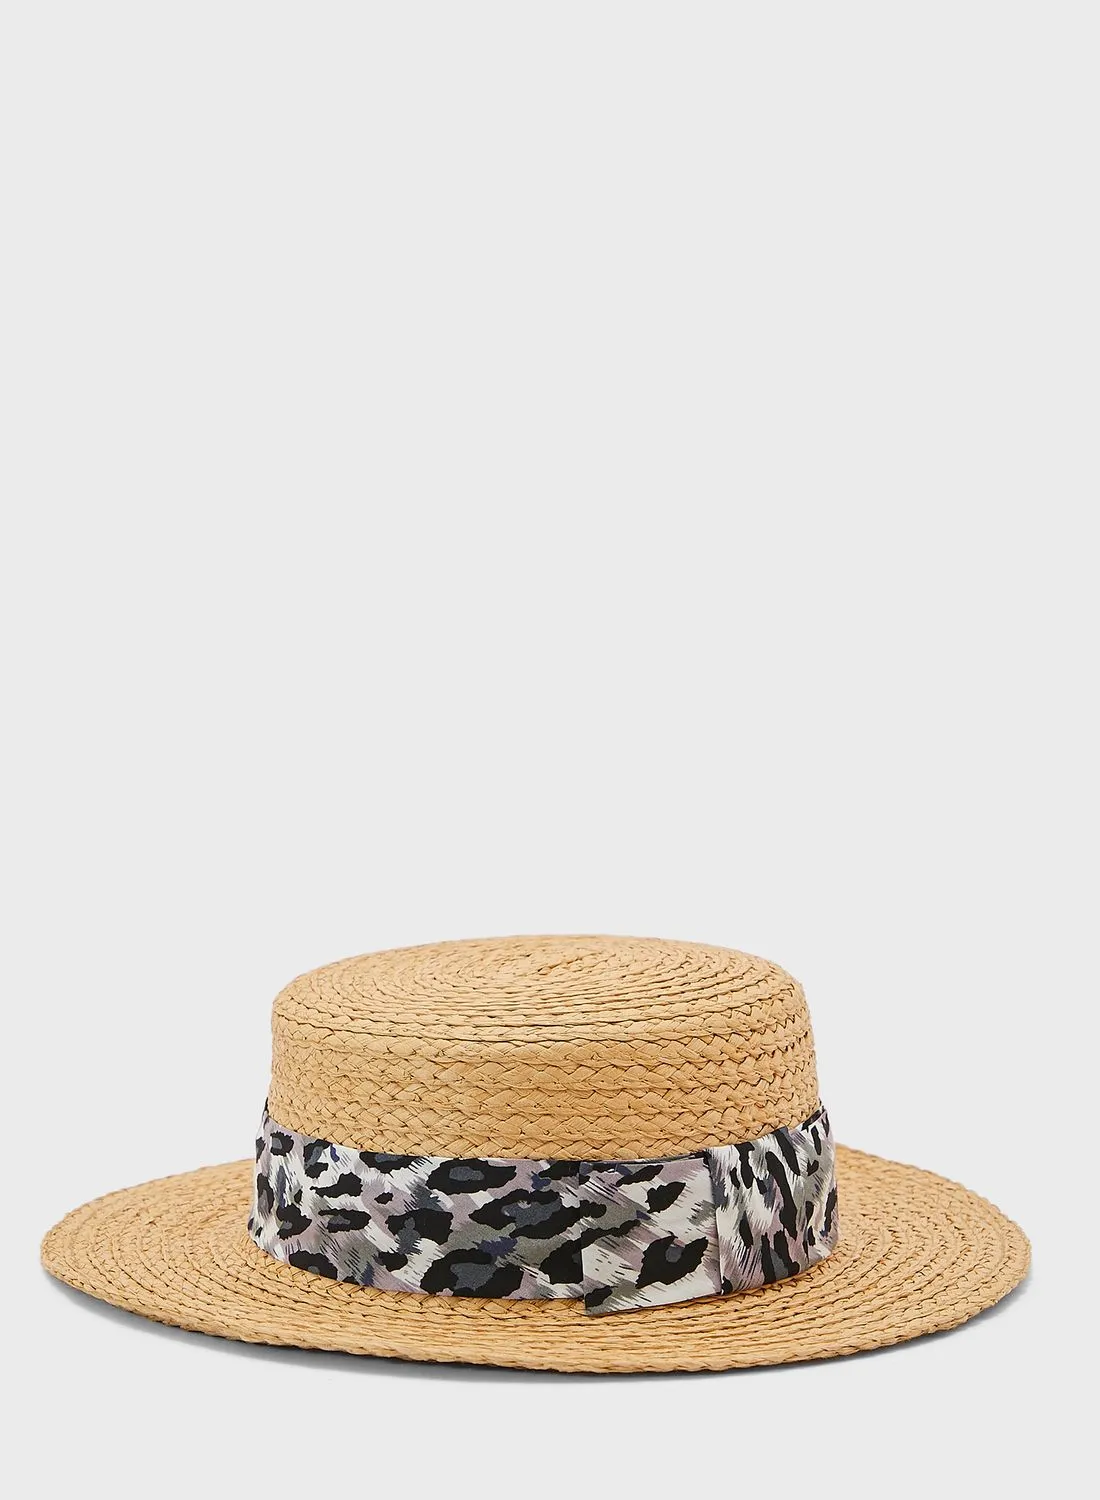 قبعة من القش بفيونكة النمر والزنجبيل